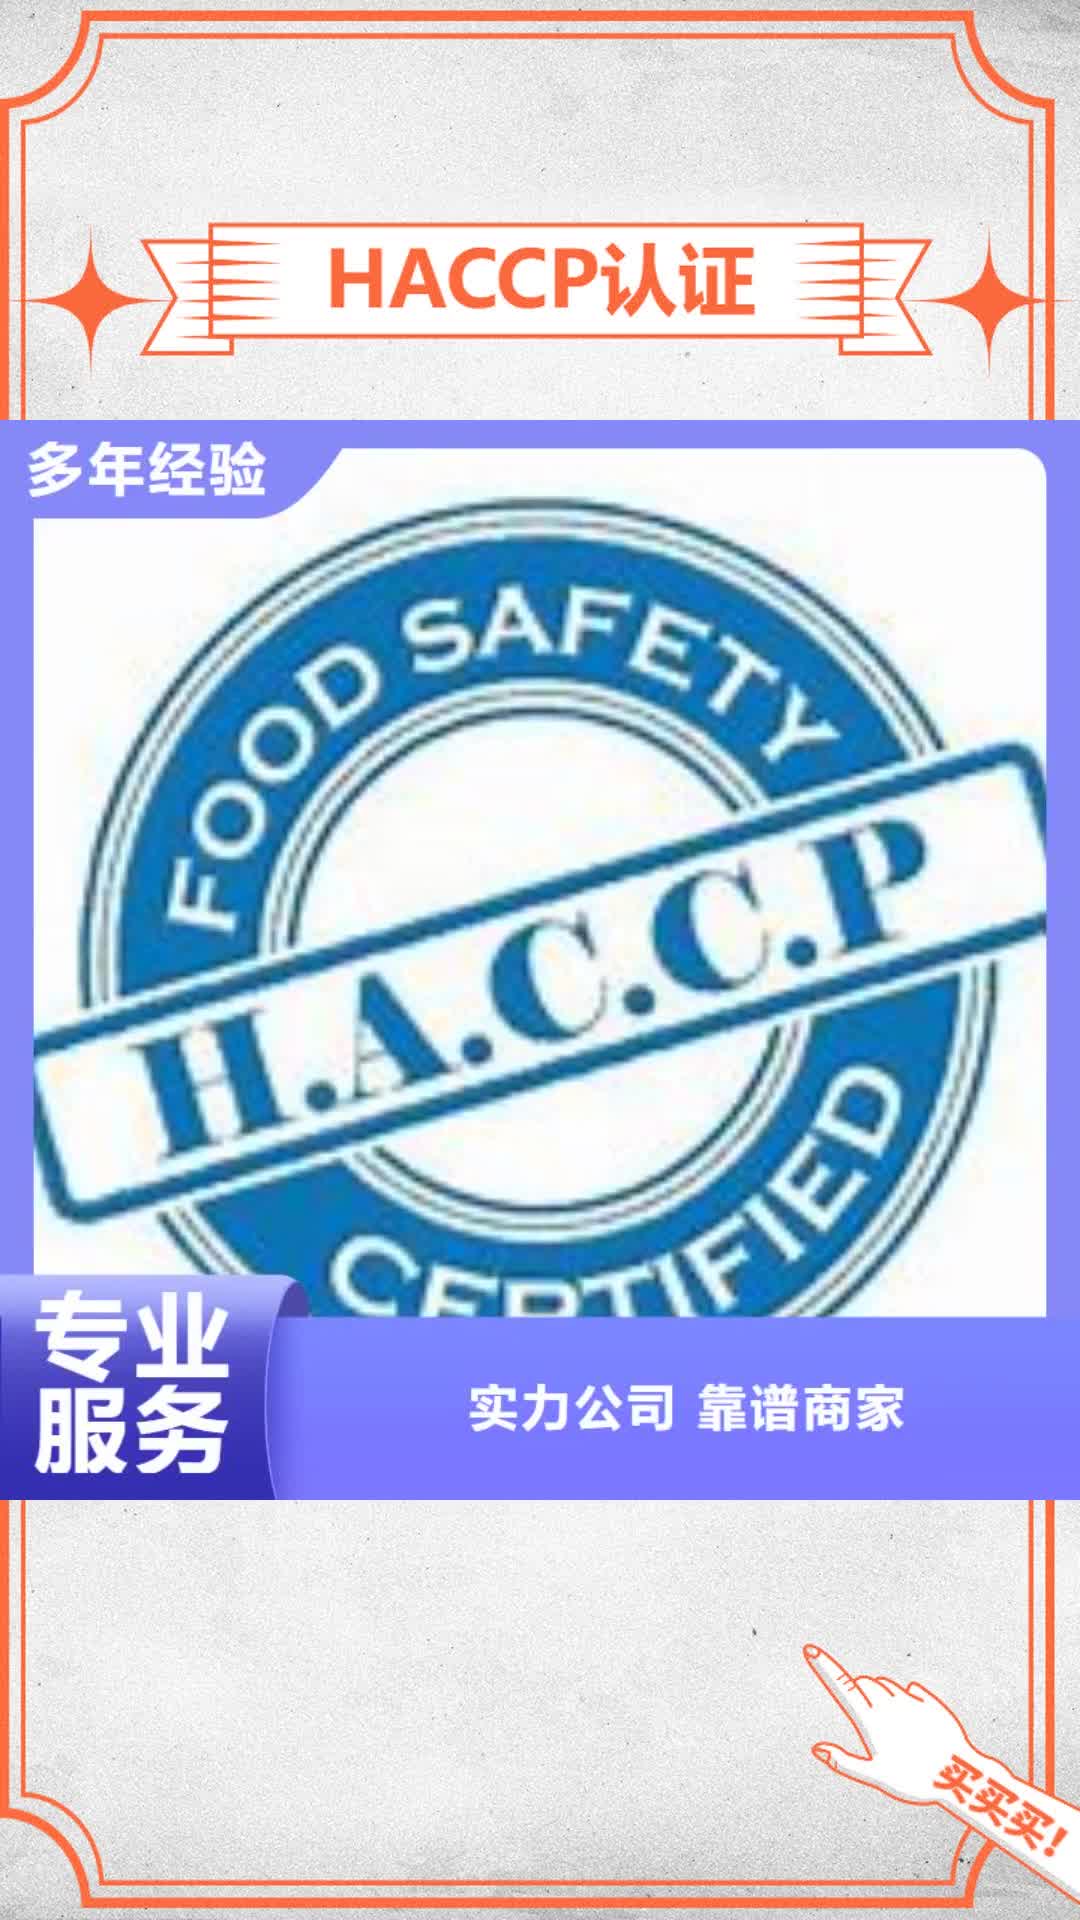 深圳【HACCP认证】ISO14000\ESD防静电认证售后保障